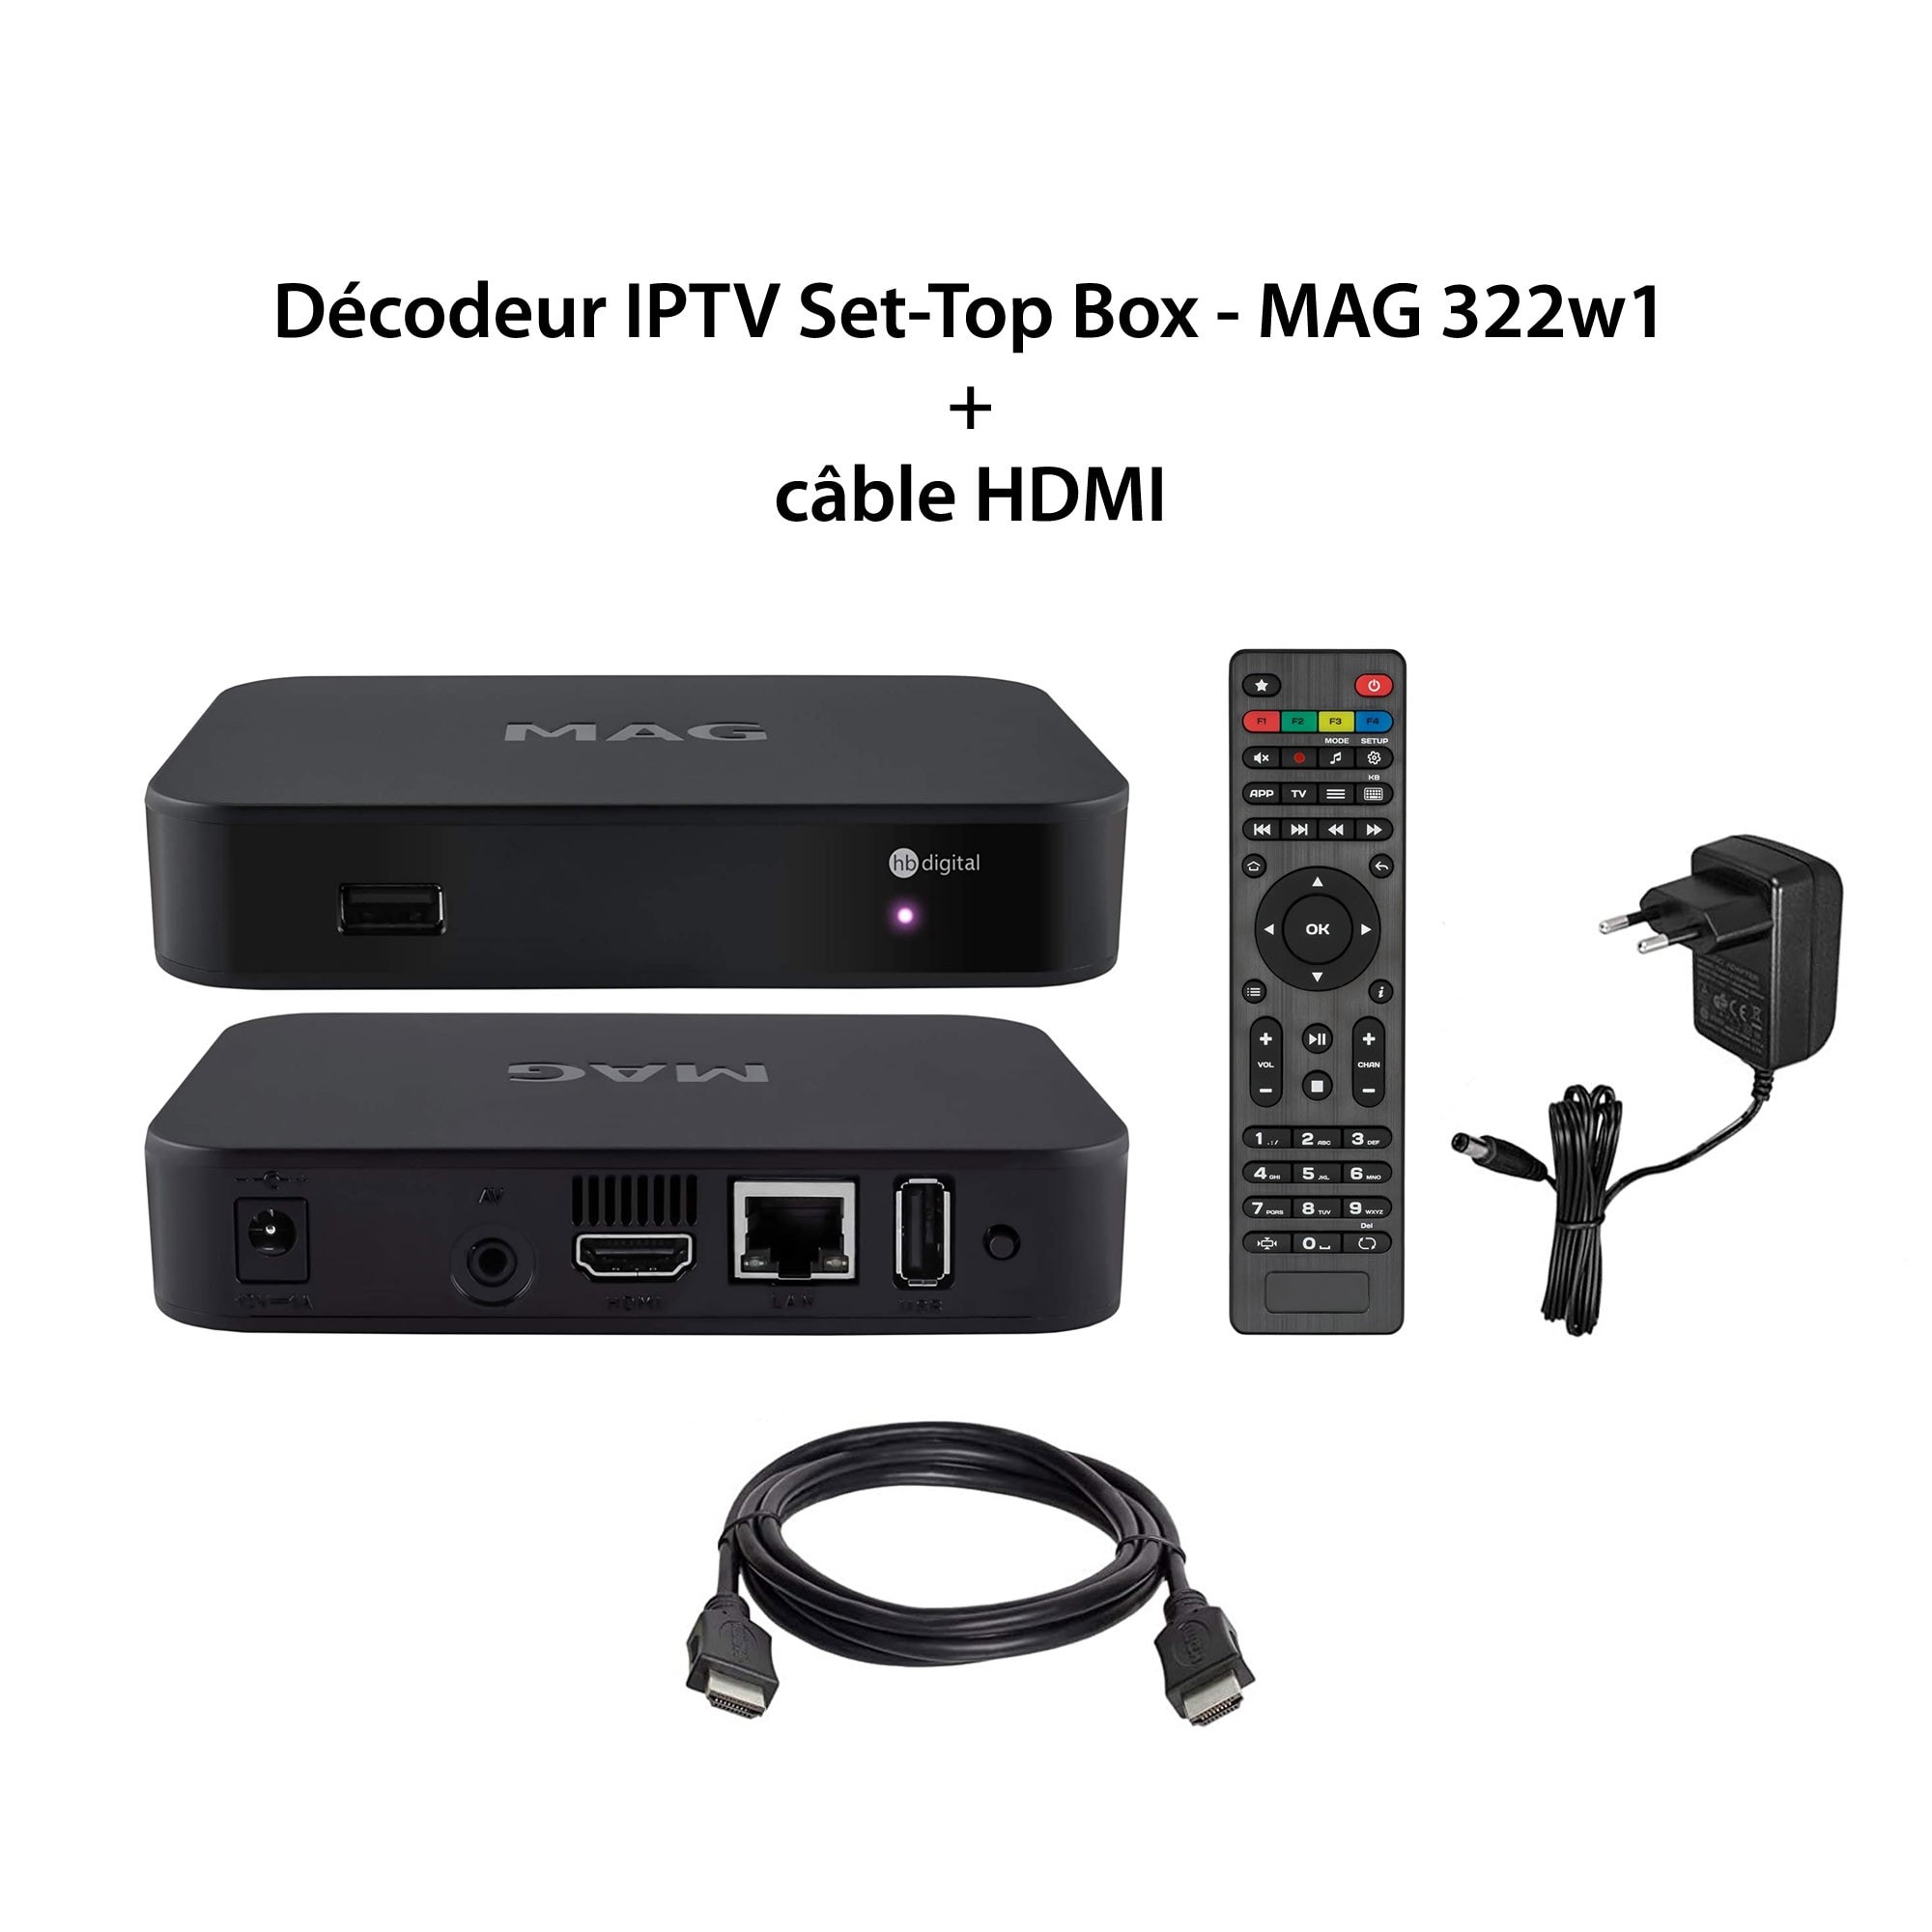 Décodeur iptv multimédia - mag 322w1 - set top box tv, h.265, wlan wifi  intégré 150mbps, lecteur multimédia internet tv, récepteur ip hevc h.256,  remplace mag 254w1 + câble hdmi INFOMIR 3701473604005